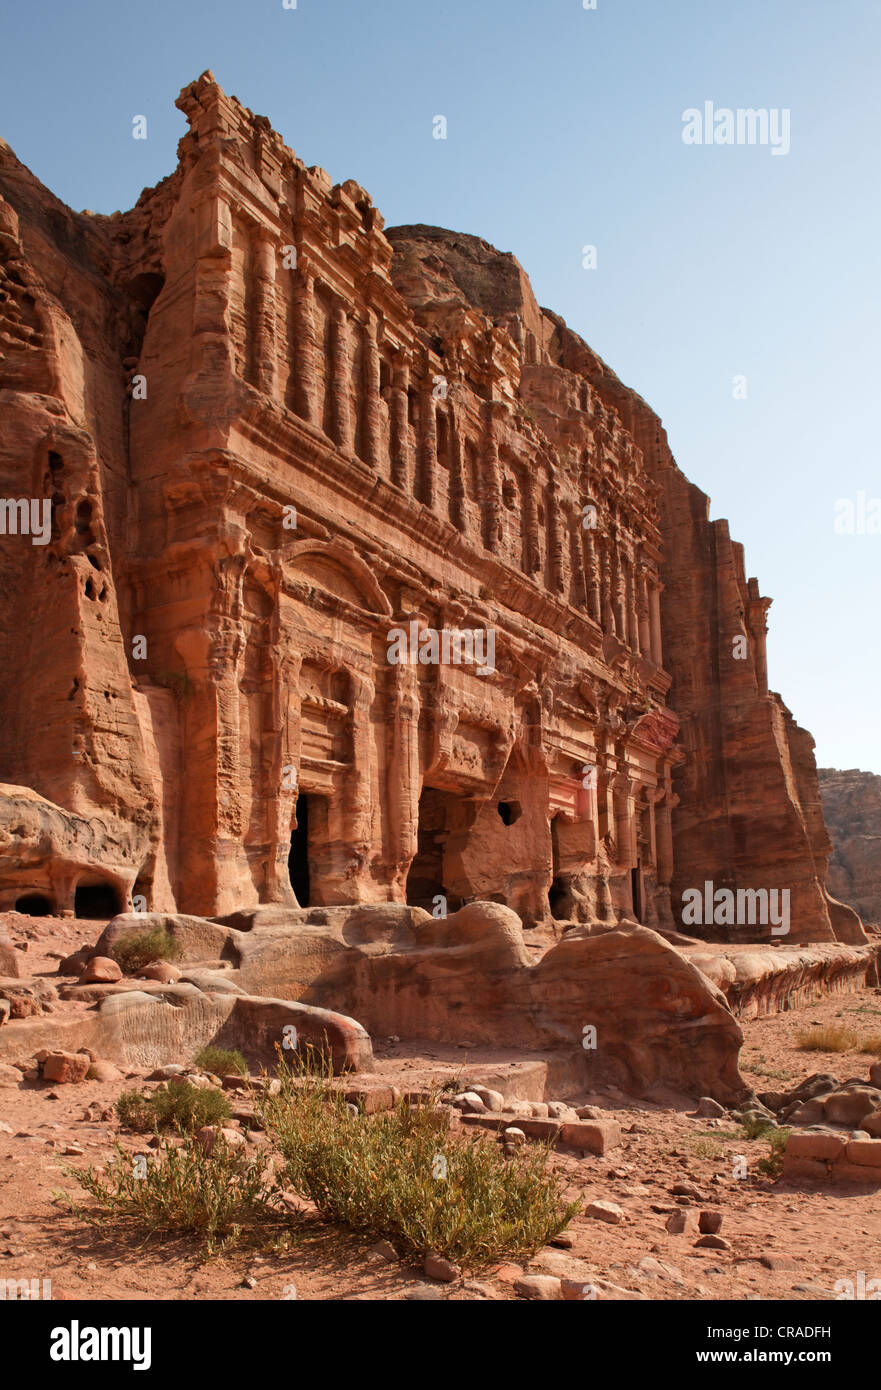 Palace tombe, avec pilastres, colonnes engagées, Pétra, capitale des Nabatéens, rock city, monde de l'UNESCO Site Hertage Banque D'Images